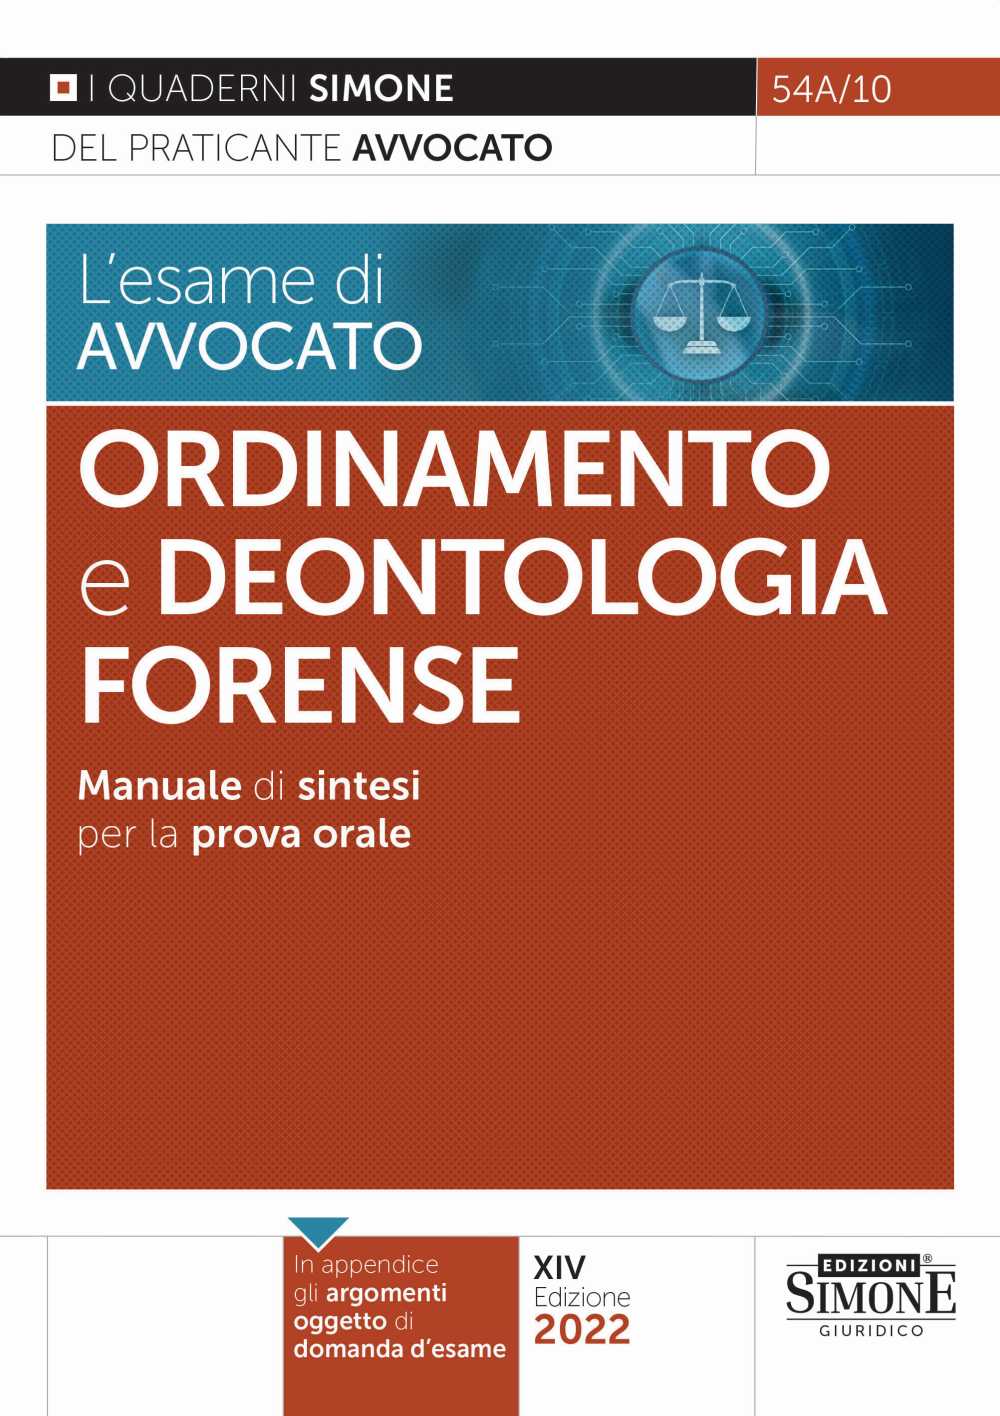 [Ebook] L'esame di avvocato - Ordinamento e Deontologia Forense - Manuale di sintesi per la prova orale